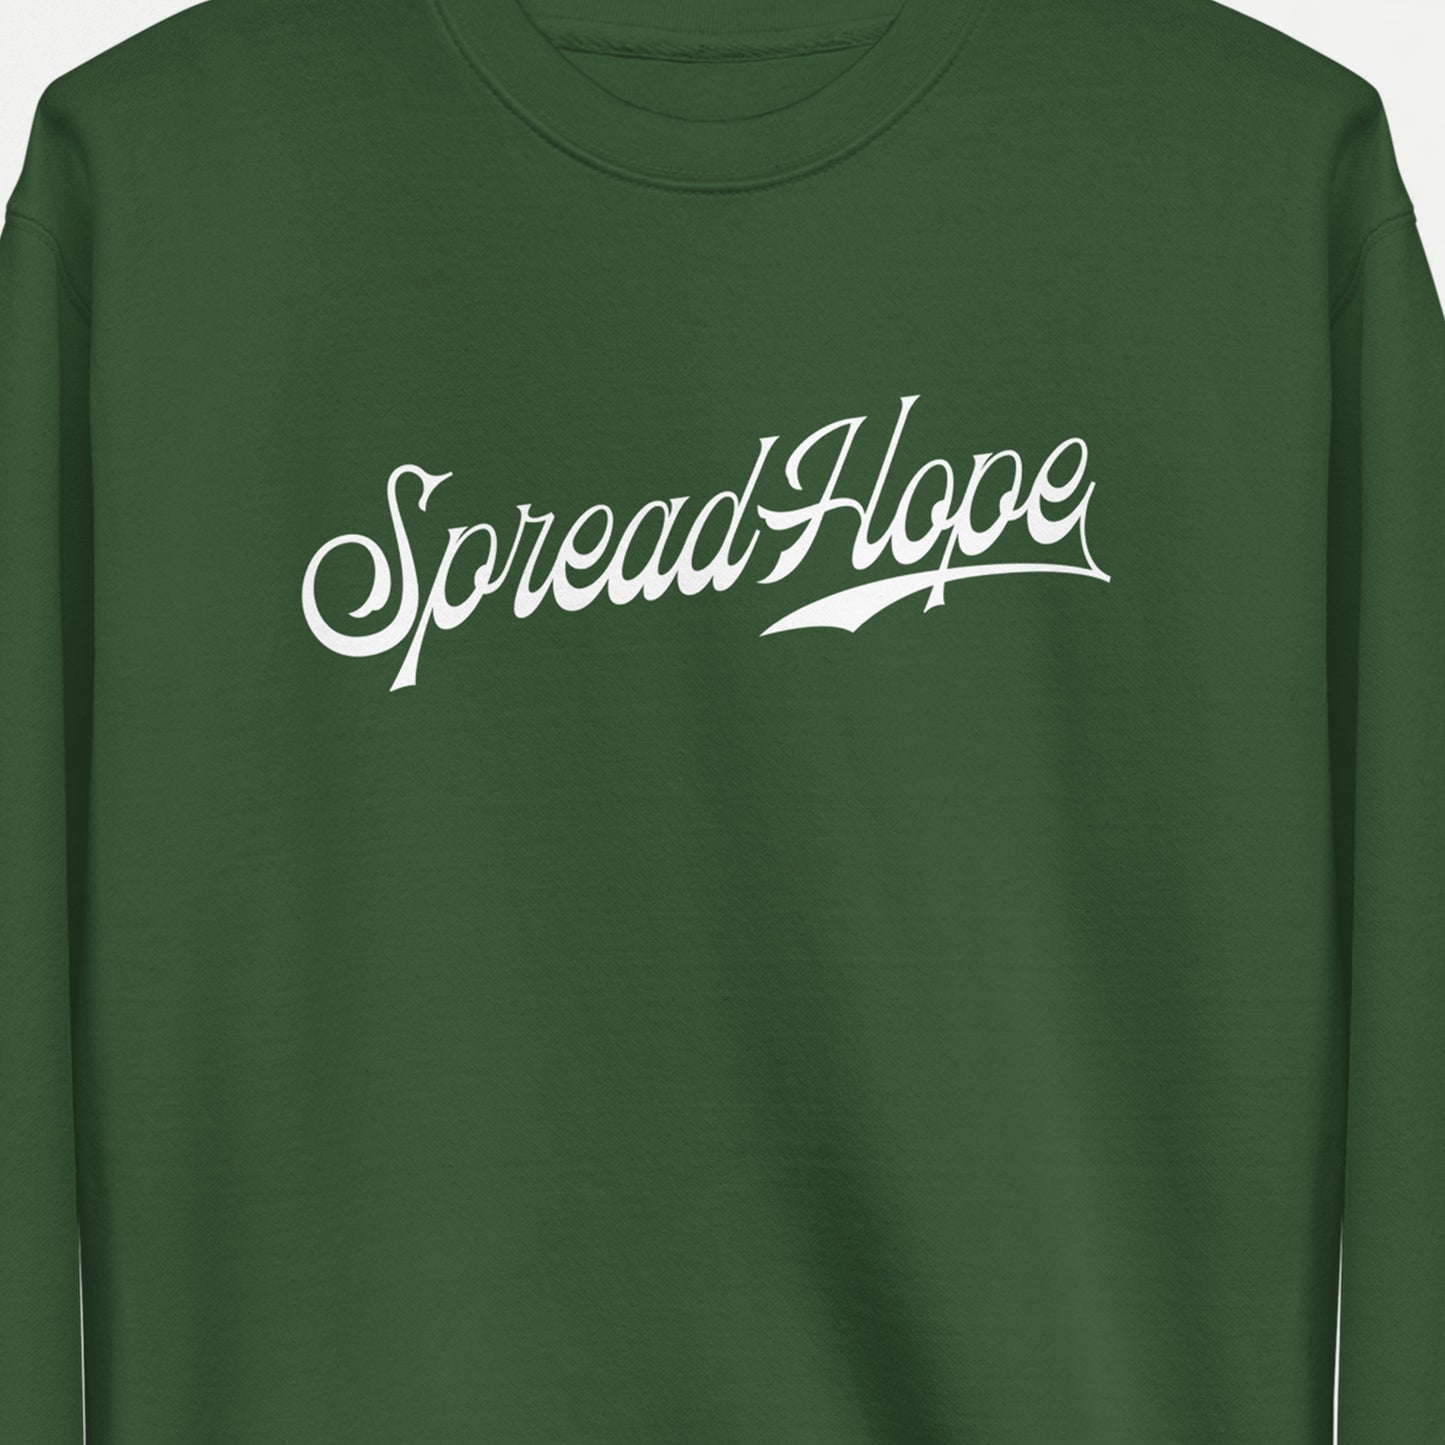 Spread Hope | Sweatshirt - Forest Green